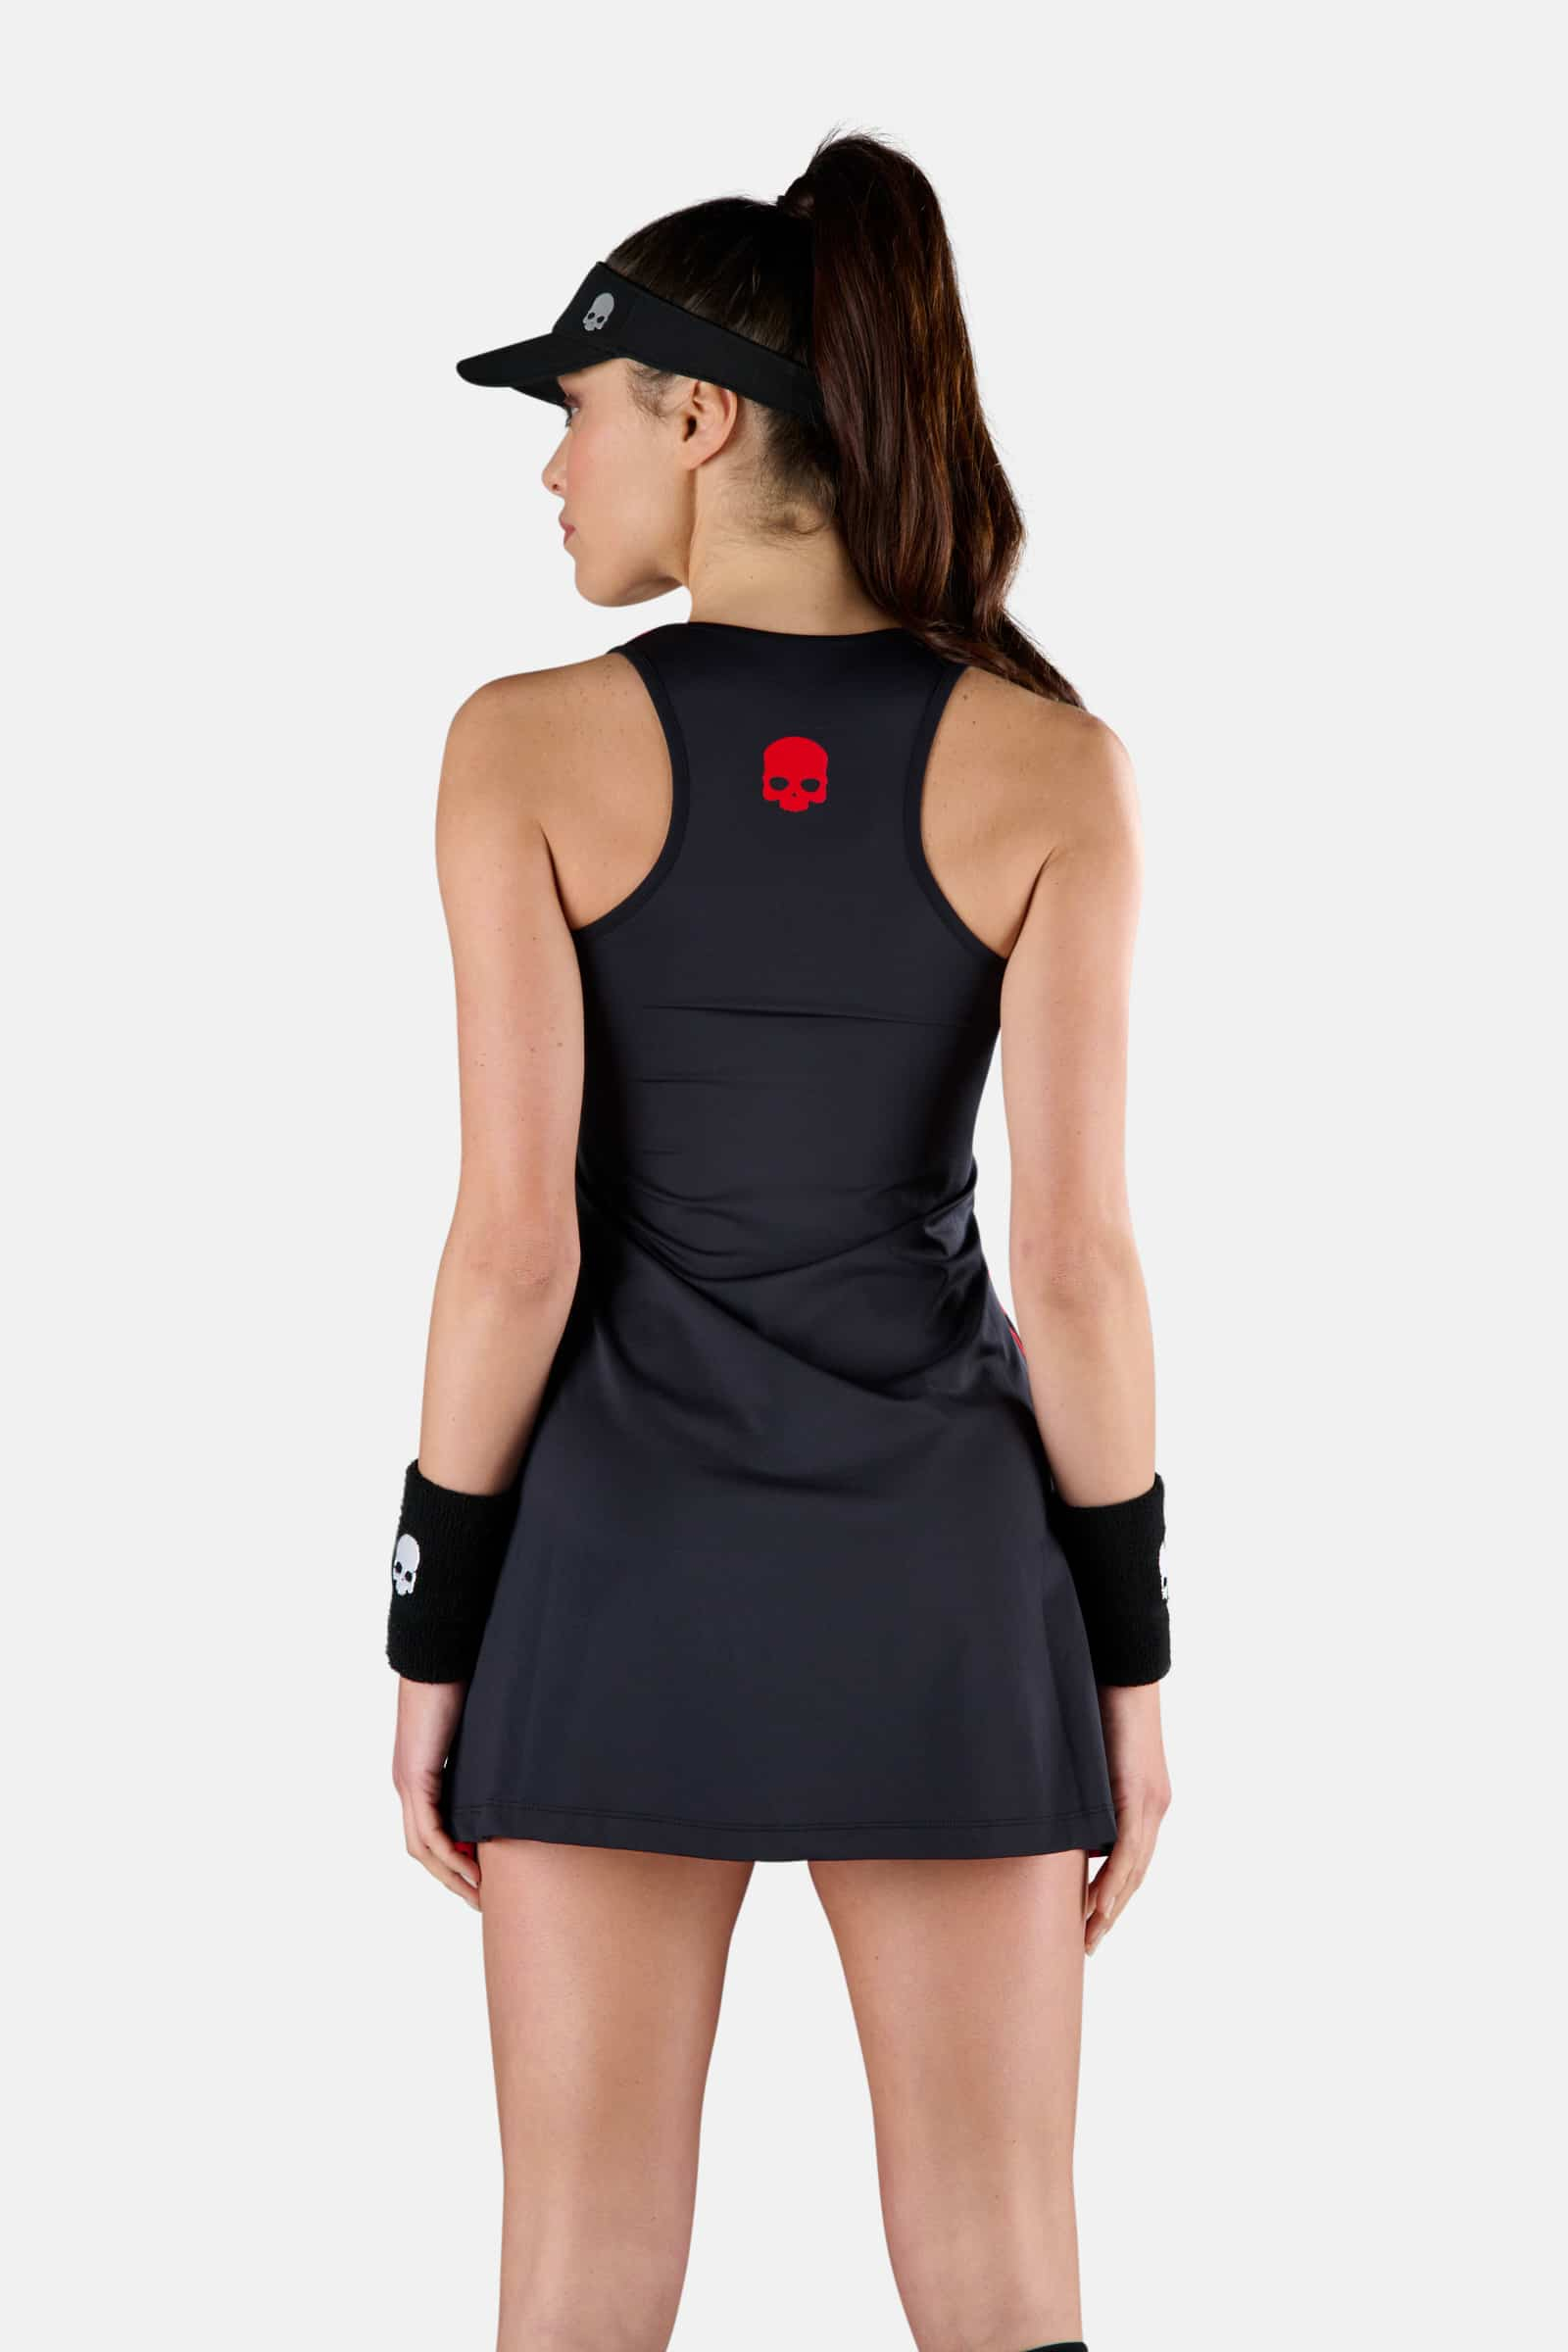 ABITO TECNICOPANTHER - BLACK,RED - Abbigliamento sportivo | Hydrogen